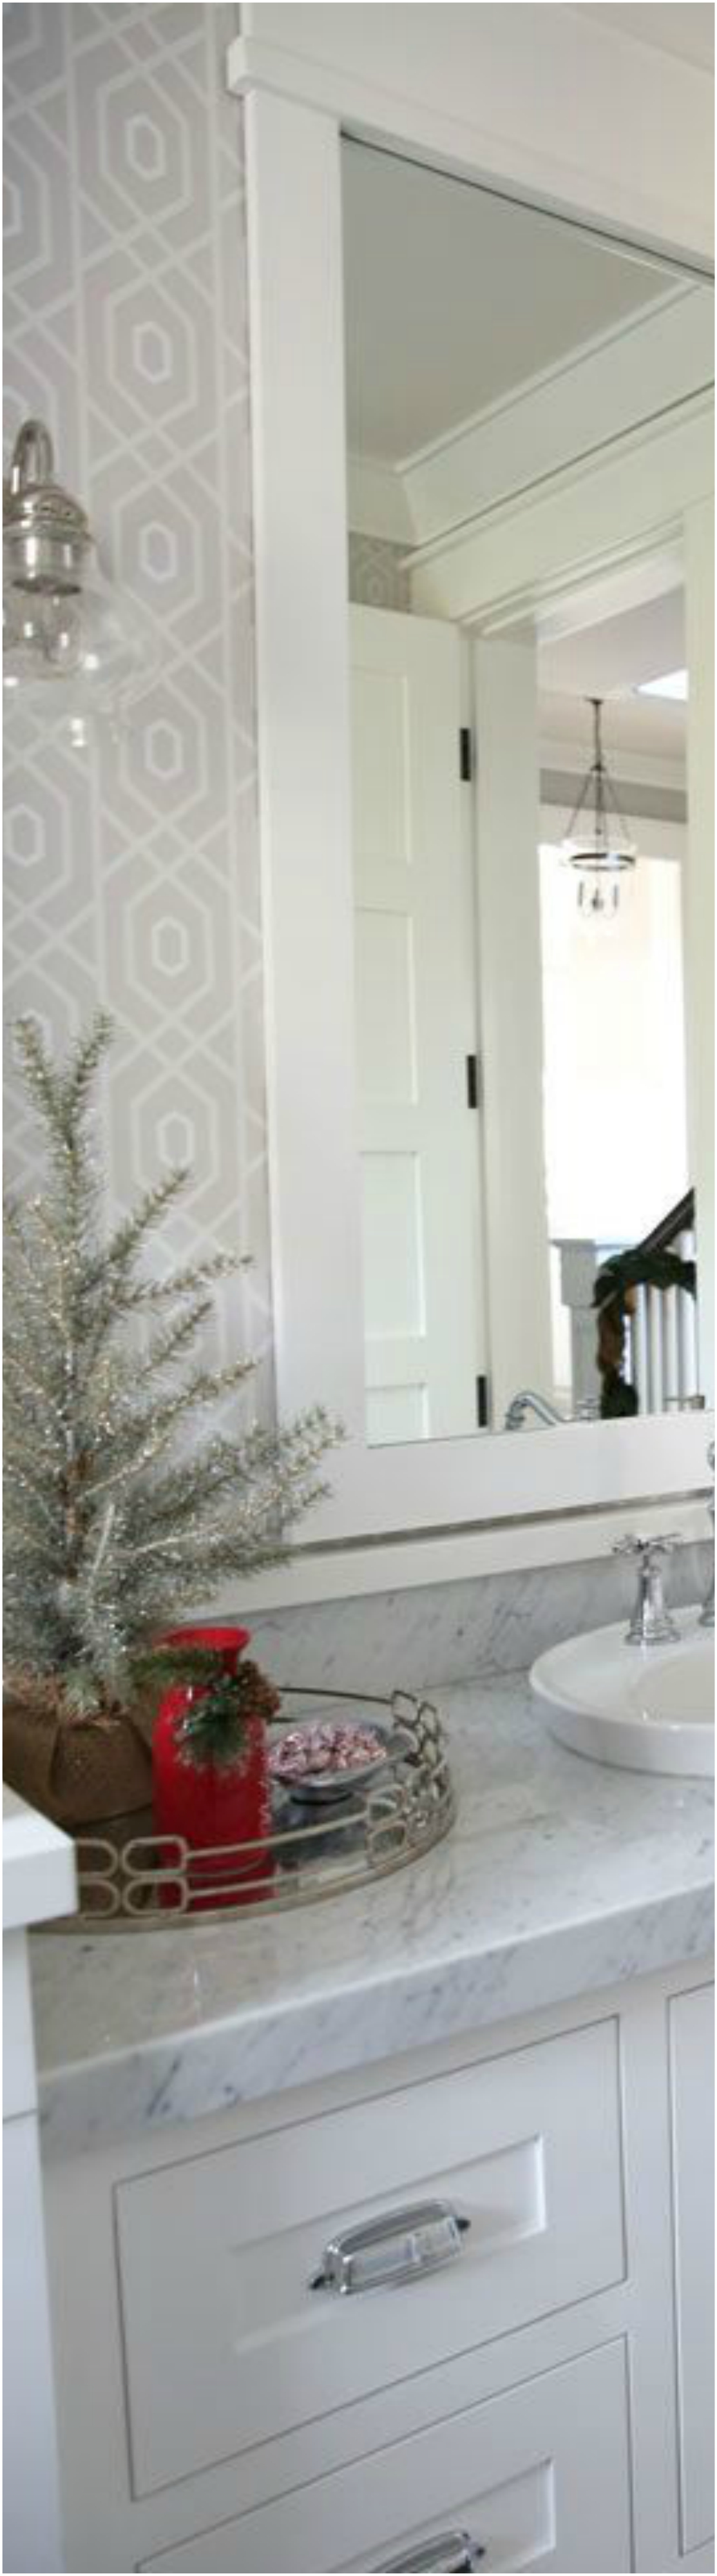 Bathroom Christmas Decoration Ideas (6)